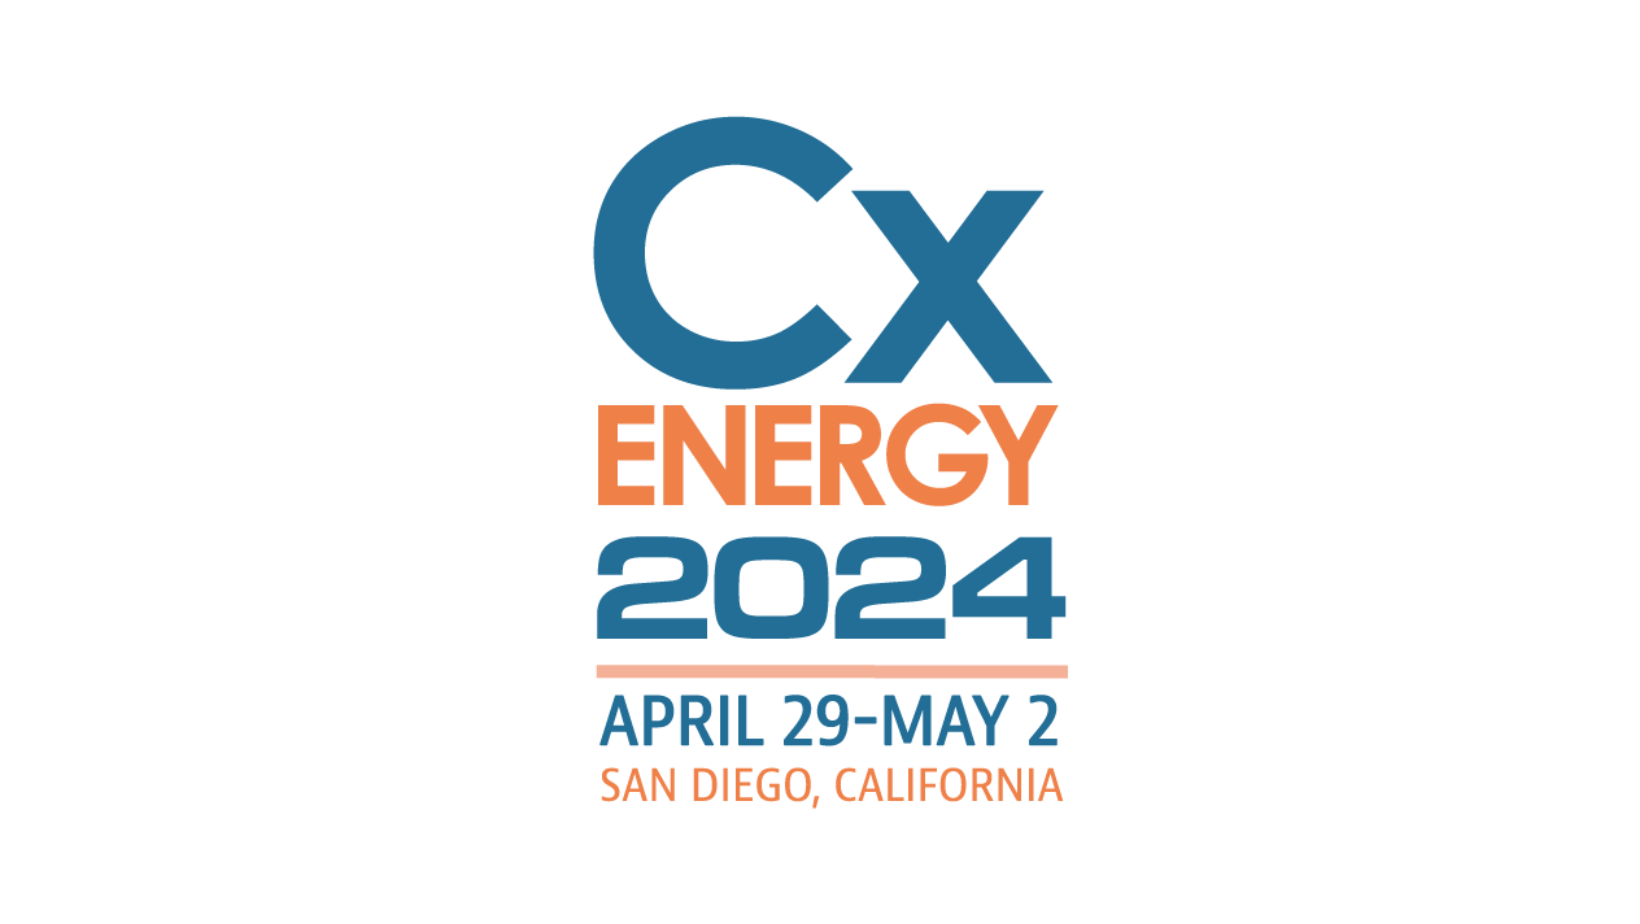 acg conference CxEnergy 2024